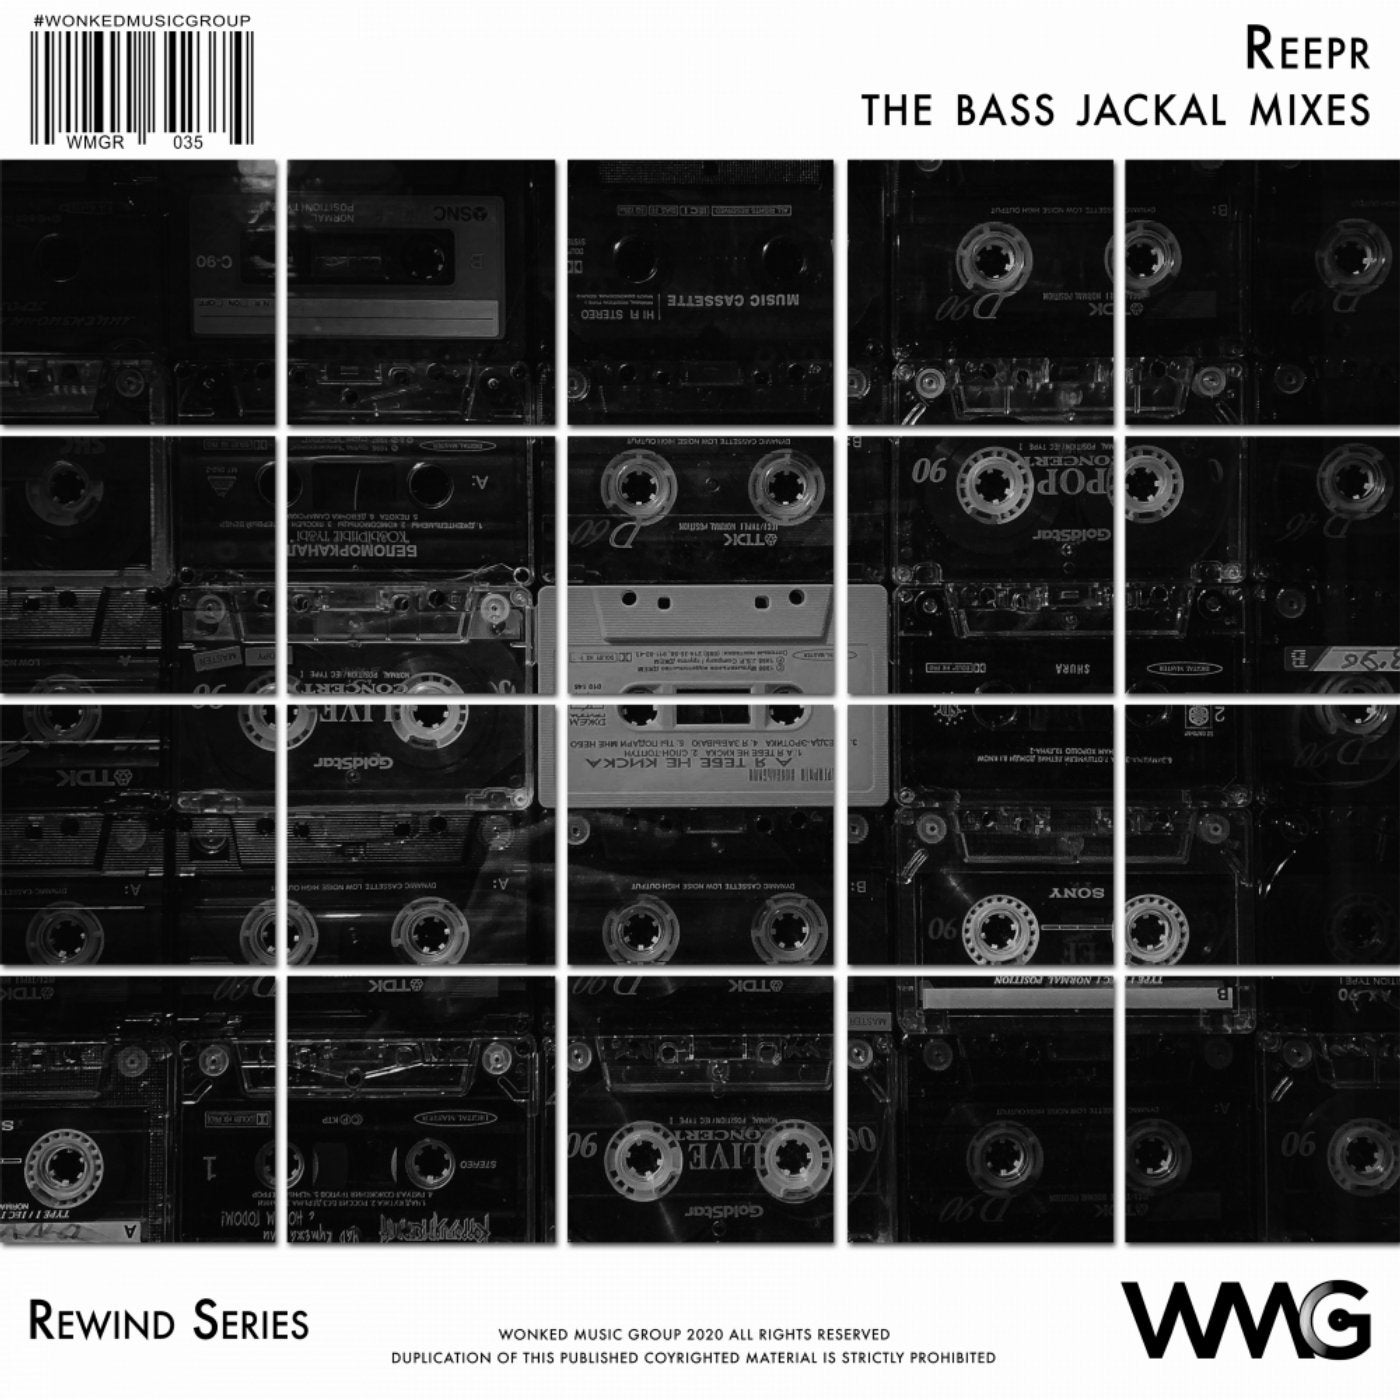 Rewind Series: ReepR - The Bass Jackal Mixes